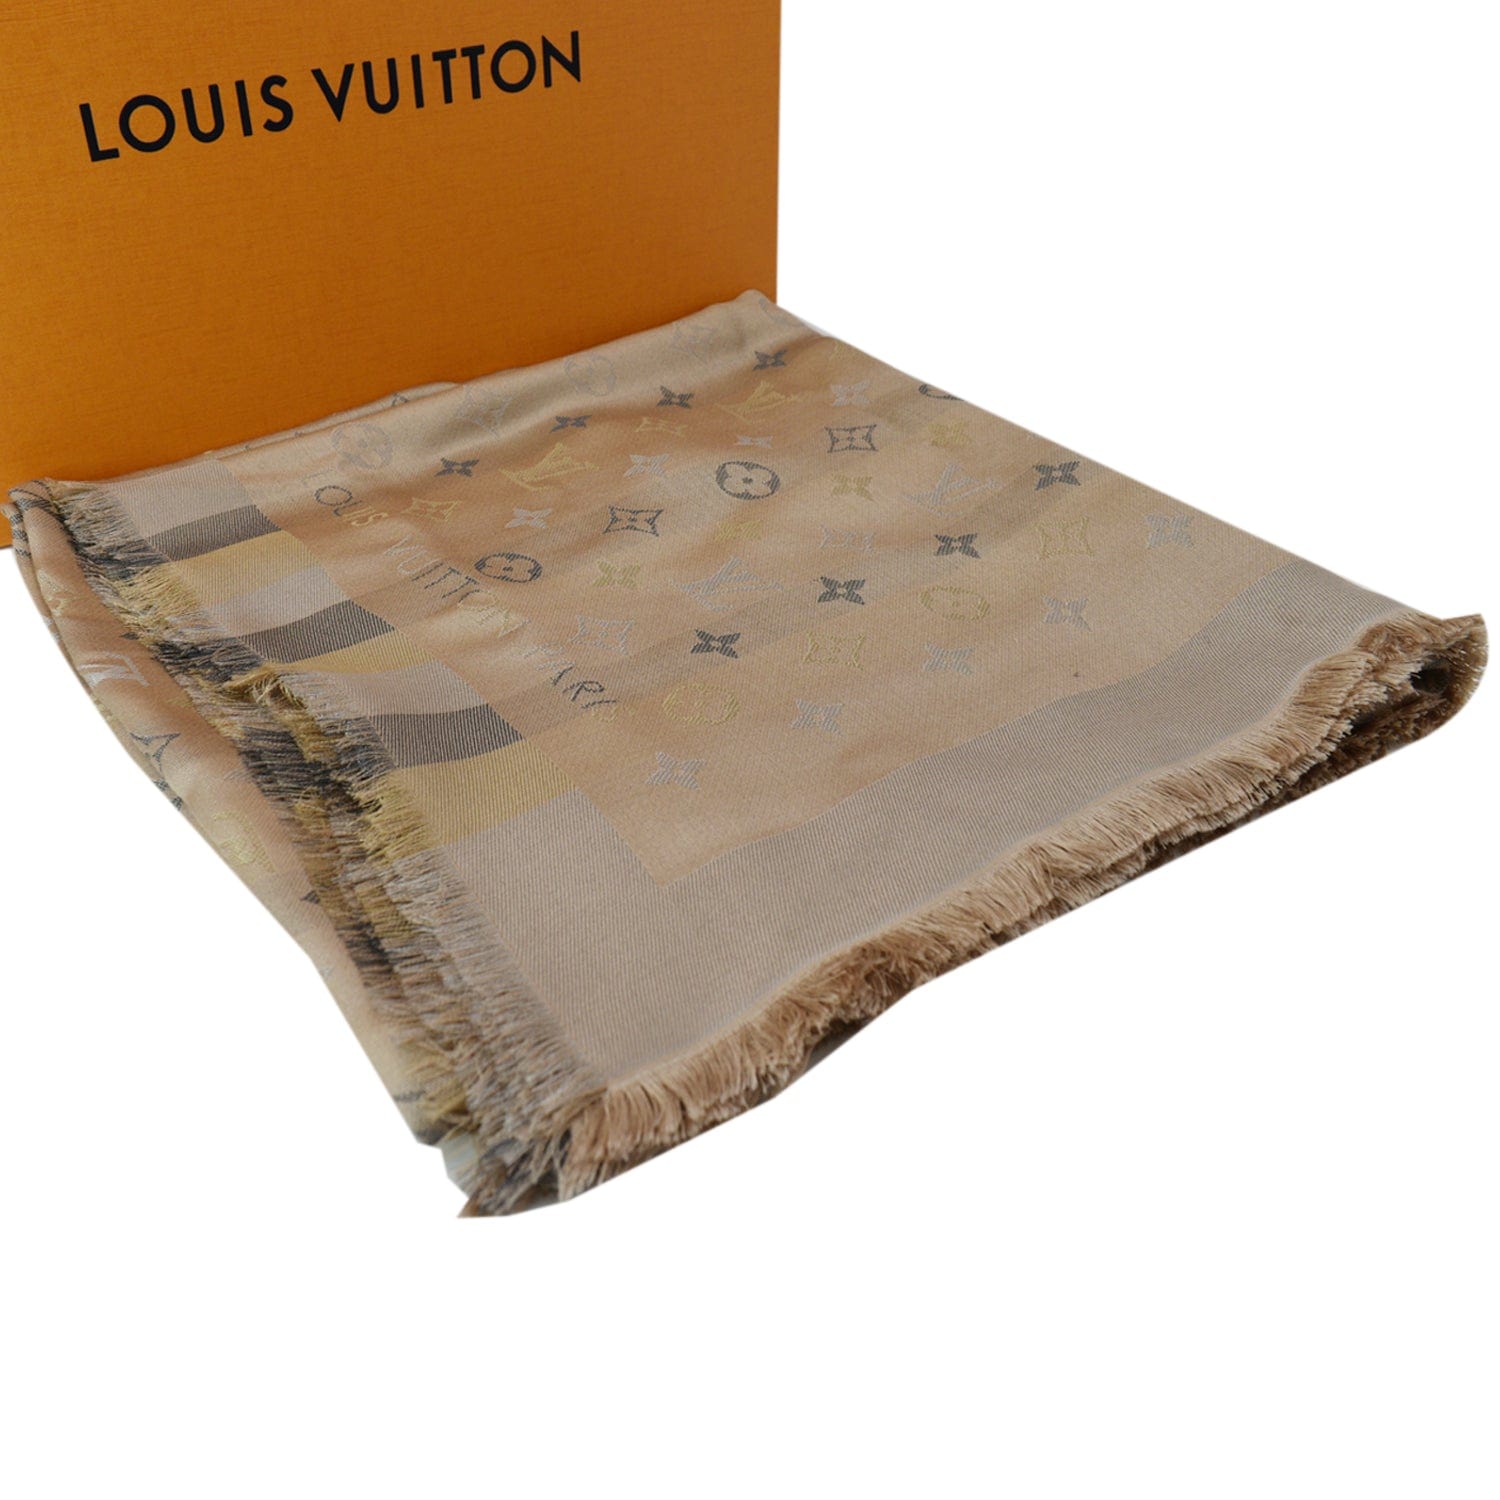 LOUIS VUITTON Silk Monogram Scarf/Shawl Beige